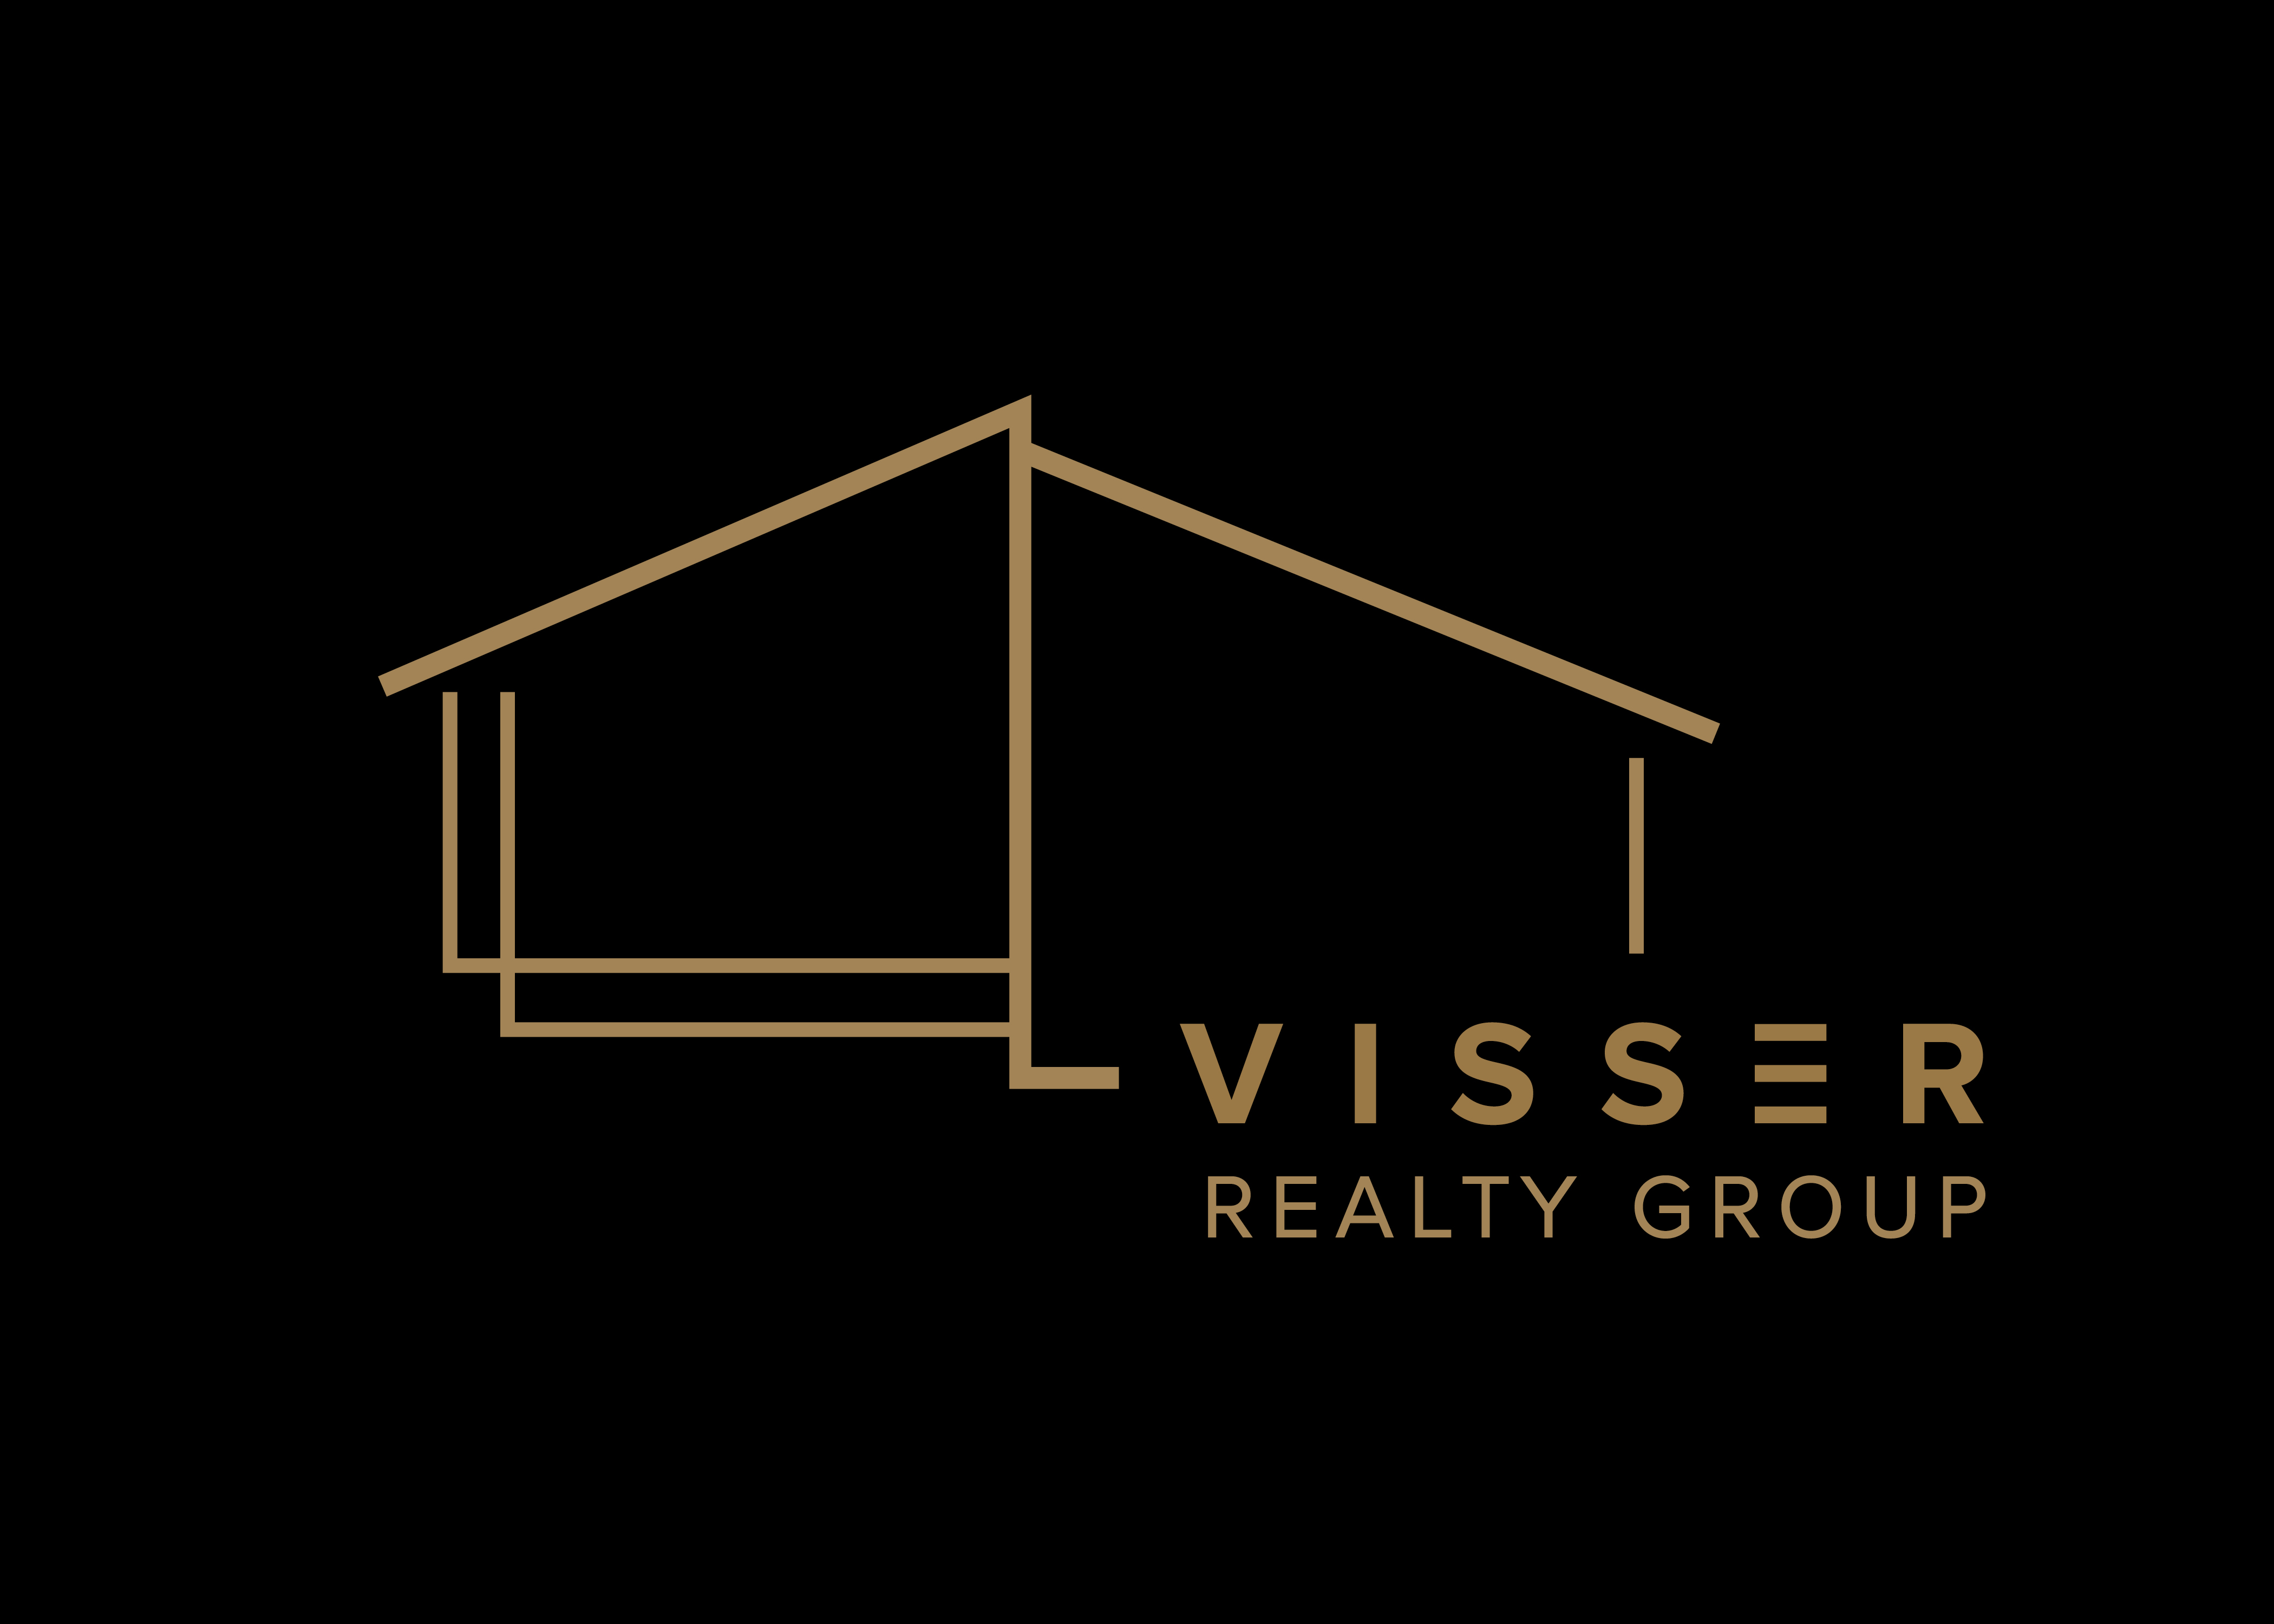 Visser Realty Group